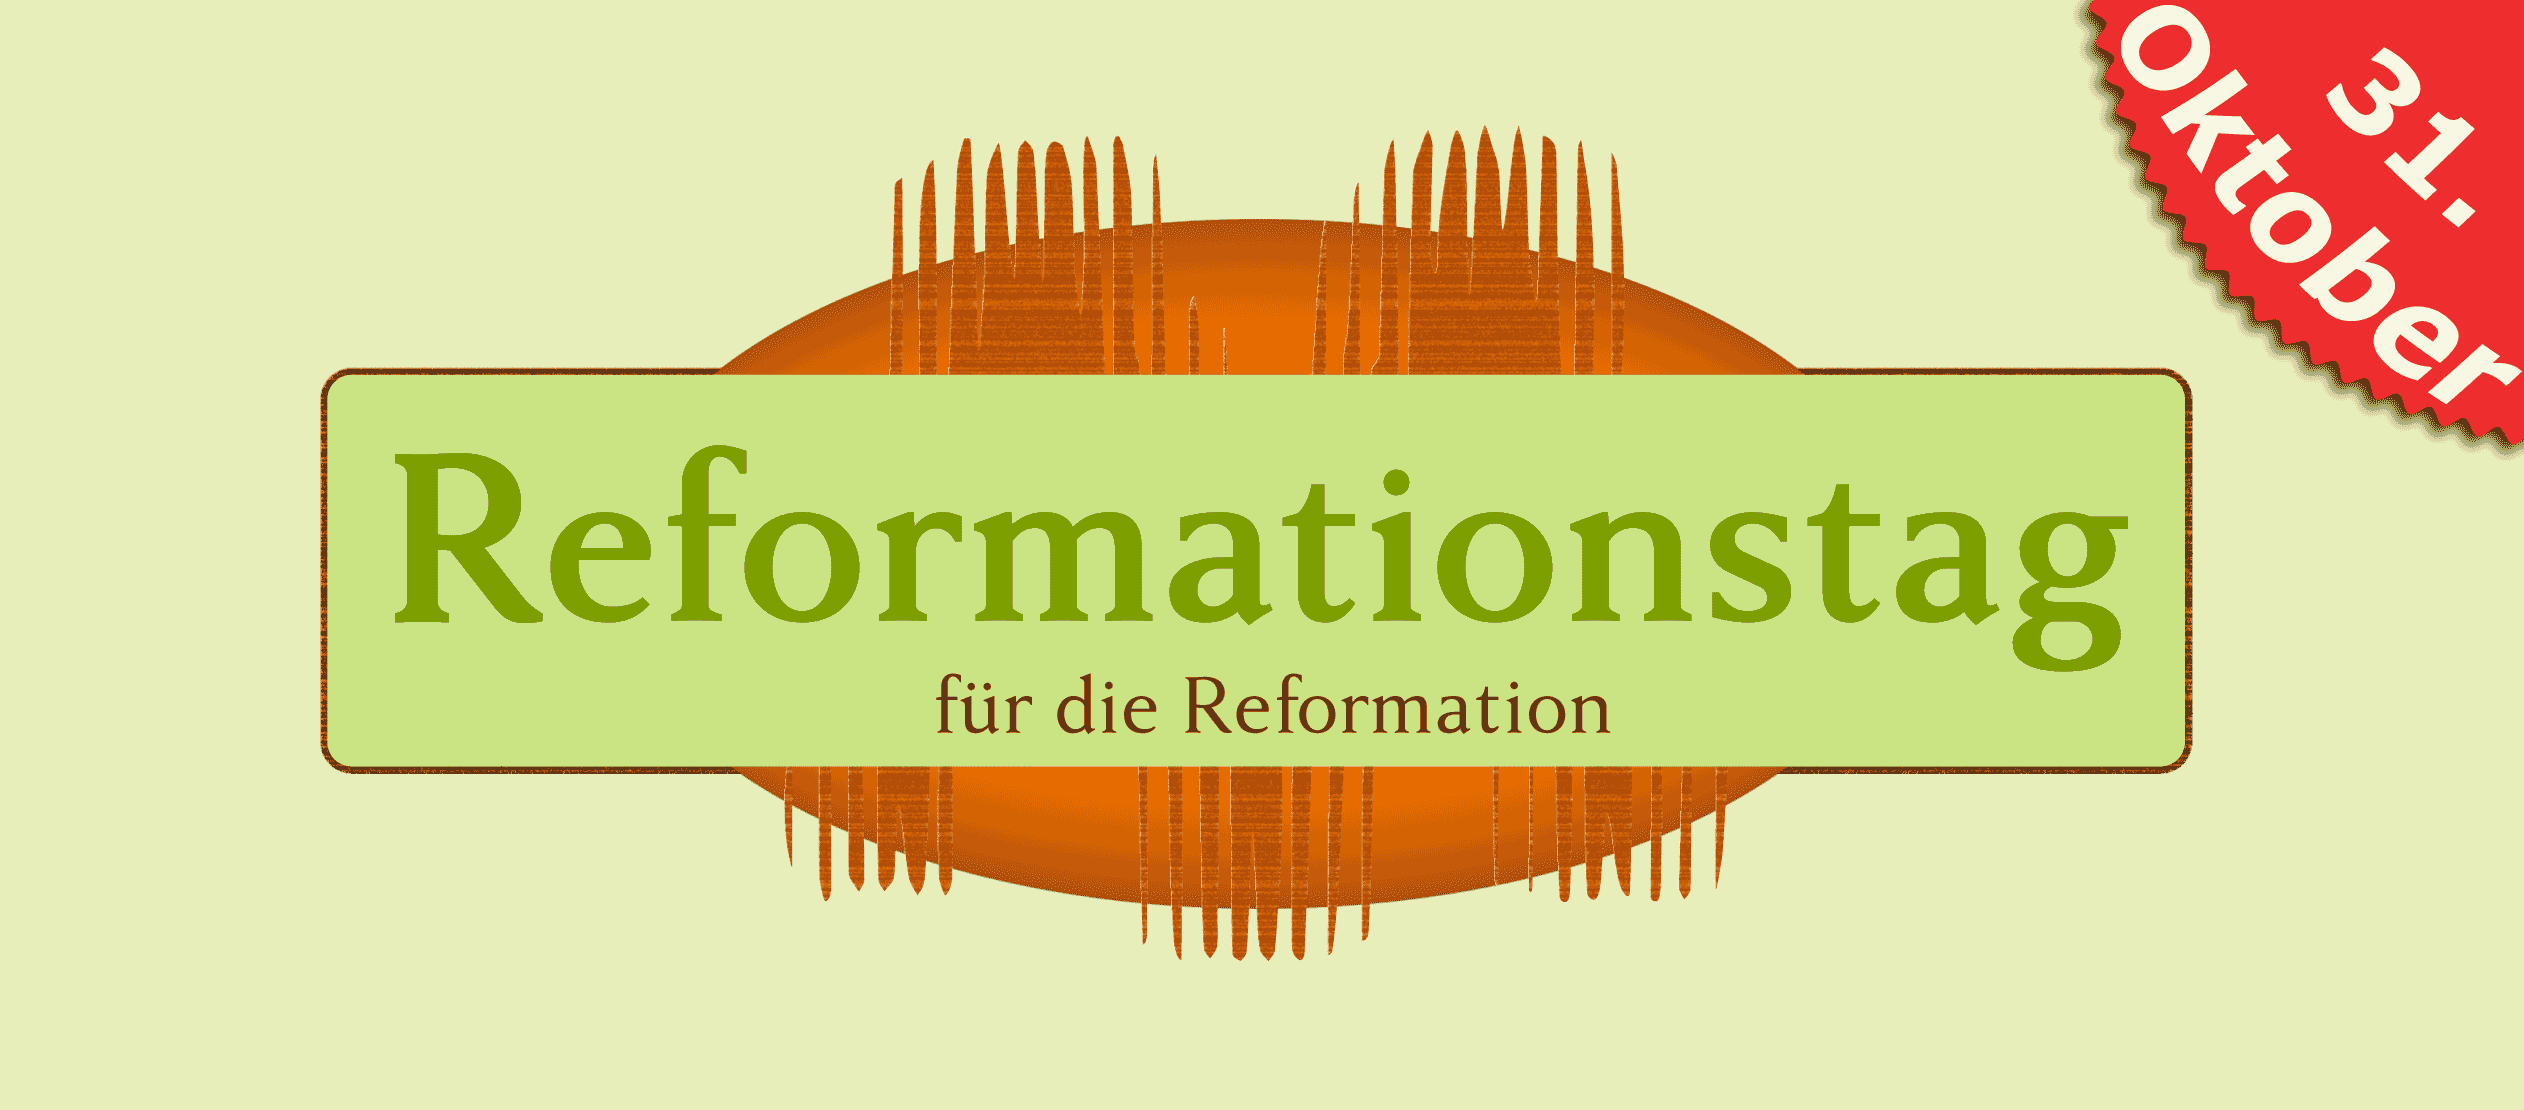 Reformationstag für die Reformation, Reformation Day oder Reformationsdag. 2024